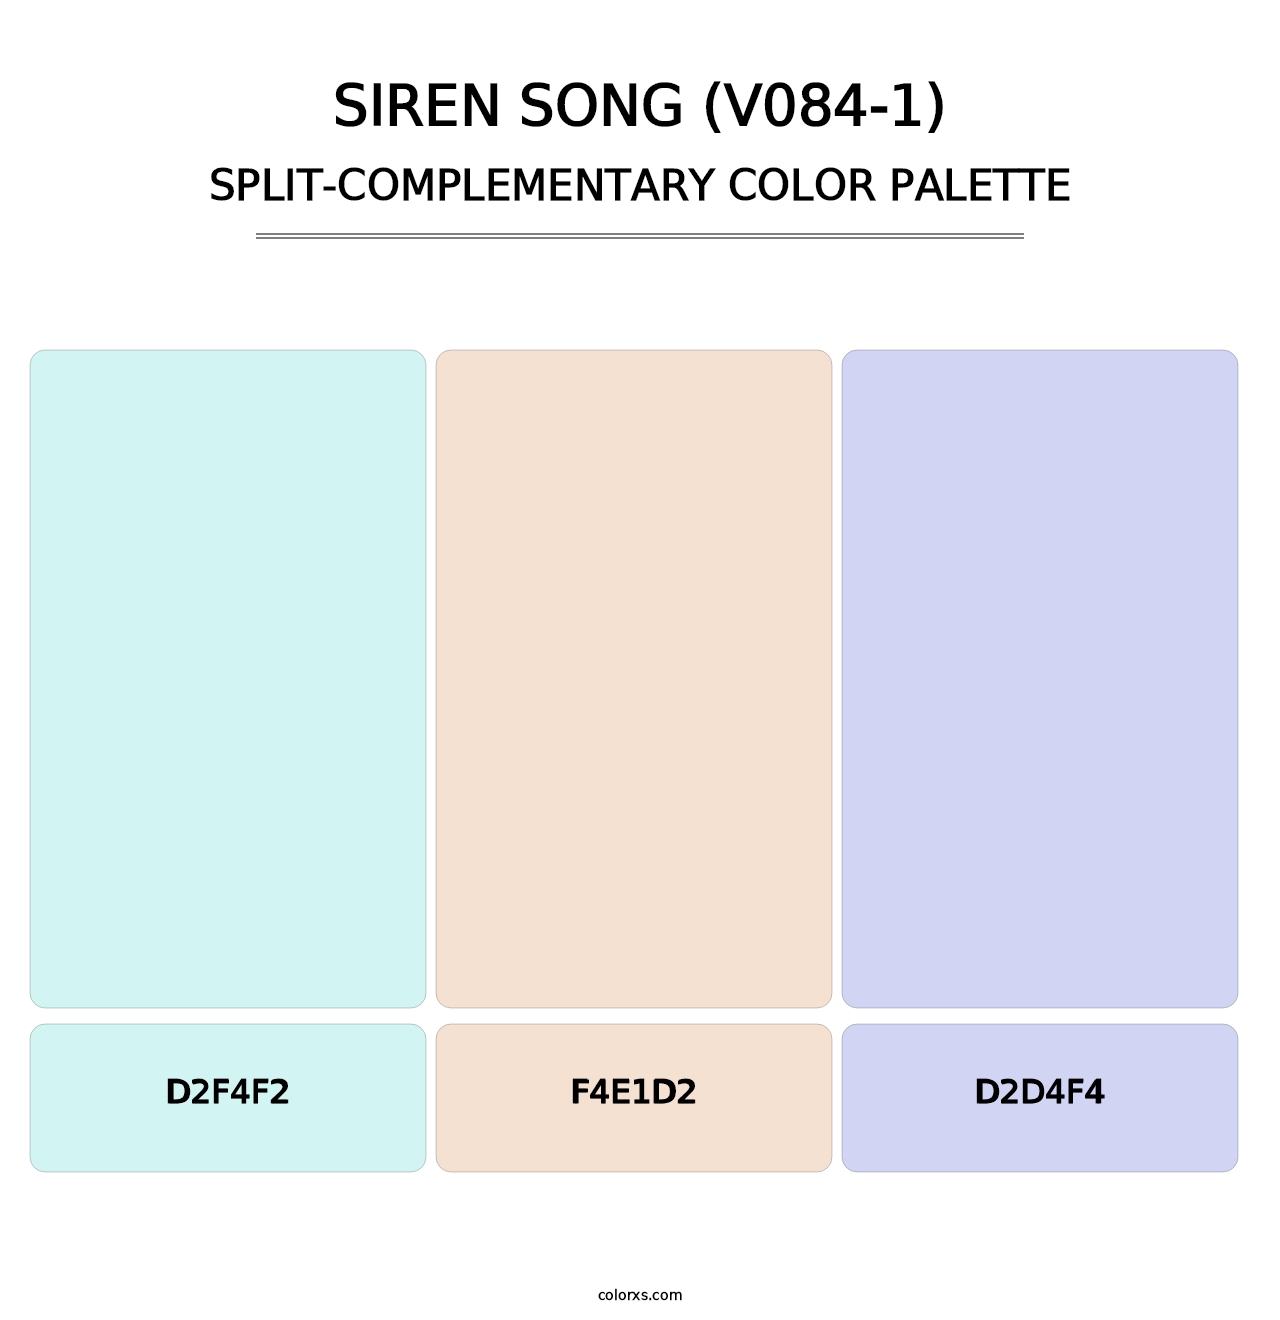 Siren Song (V084-1) - Split-Complementary Color Palette